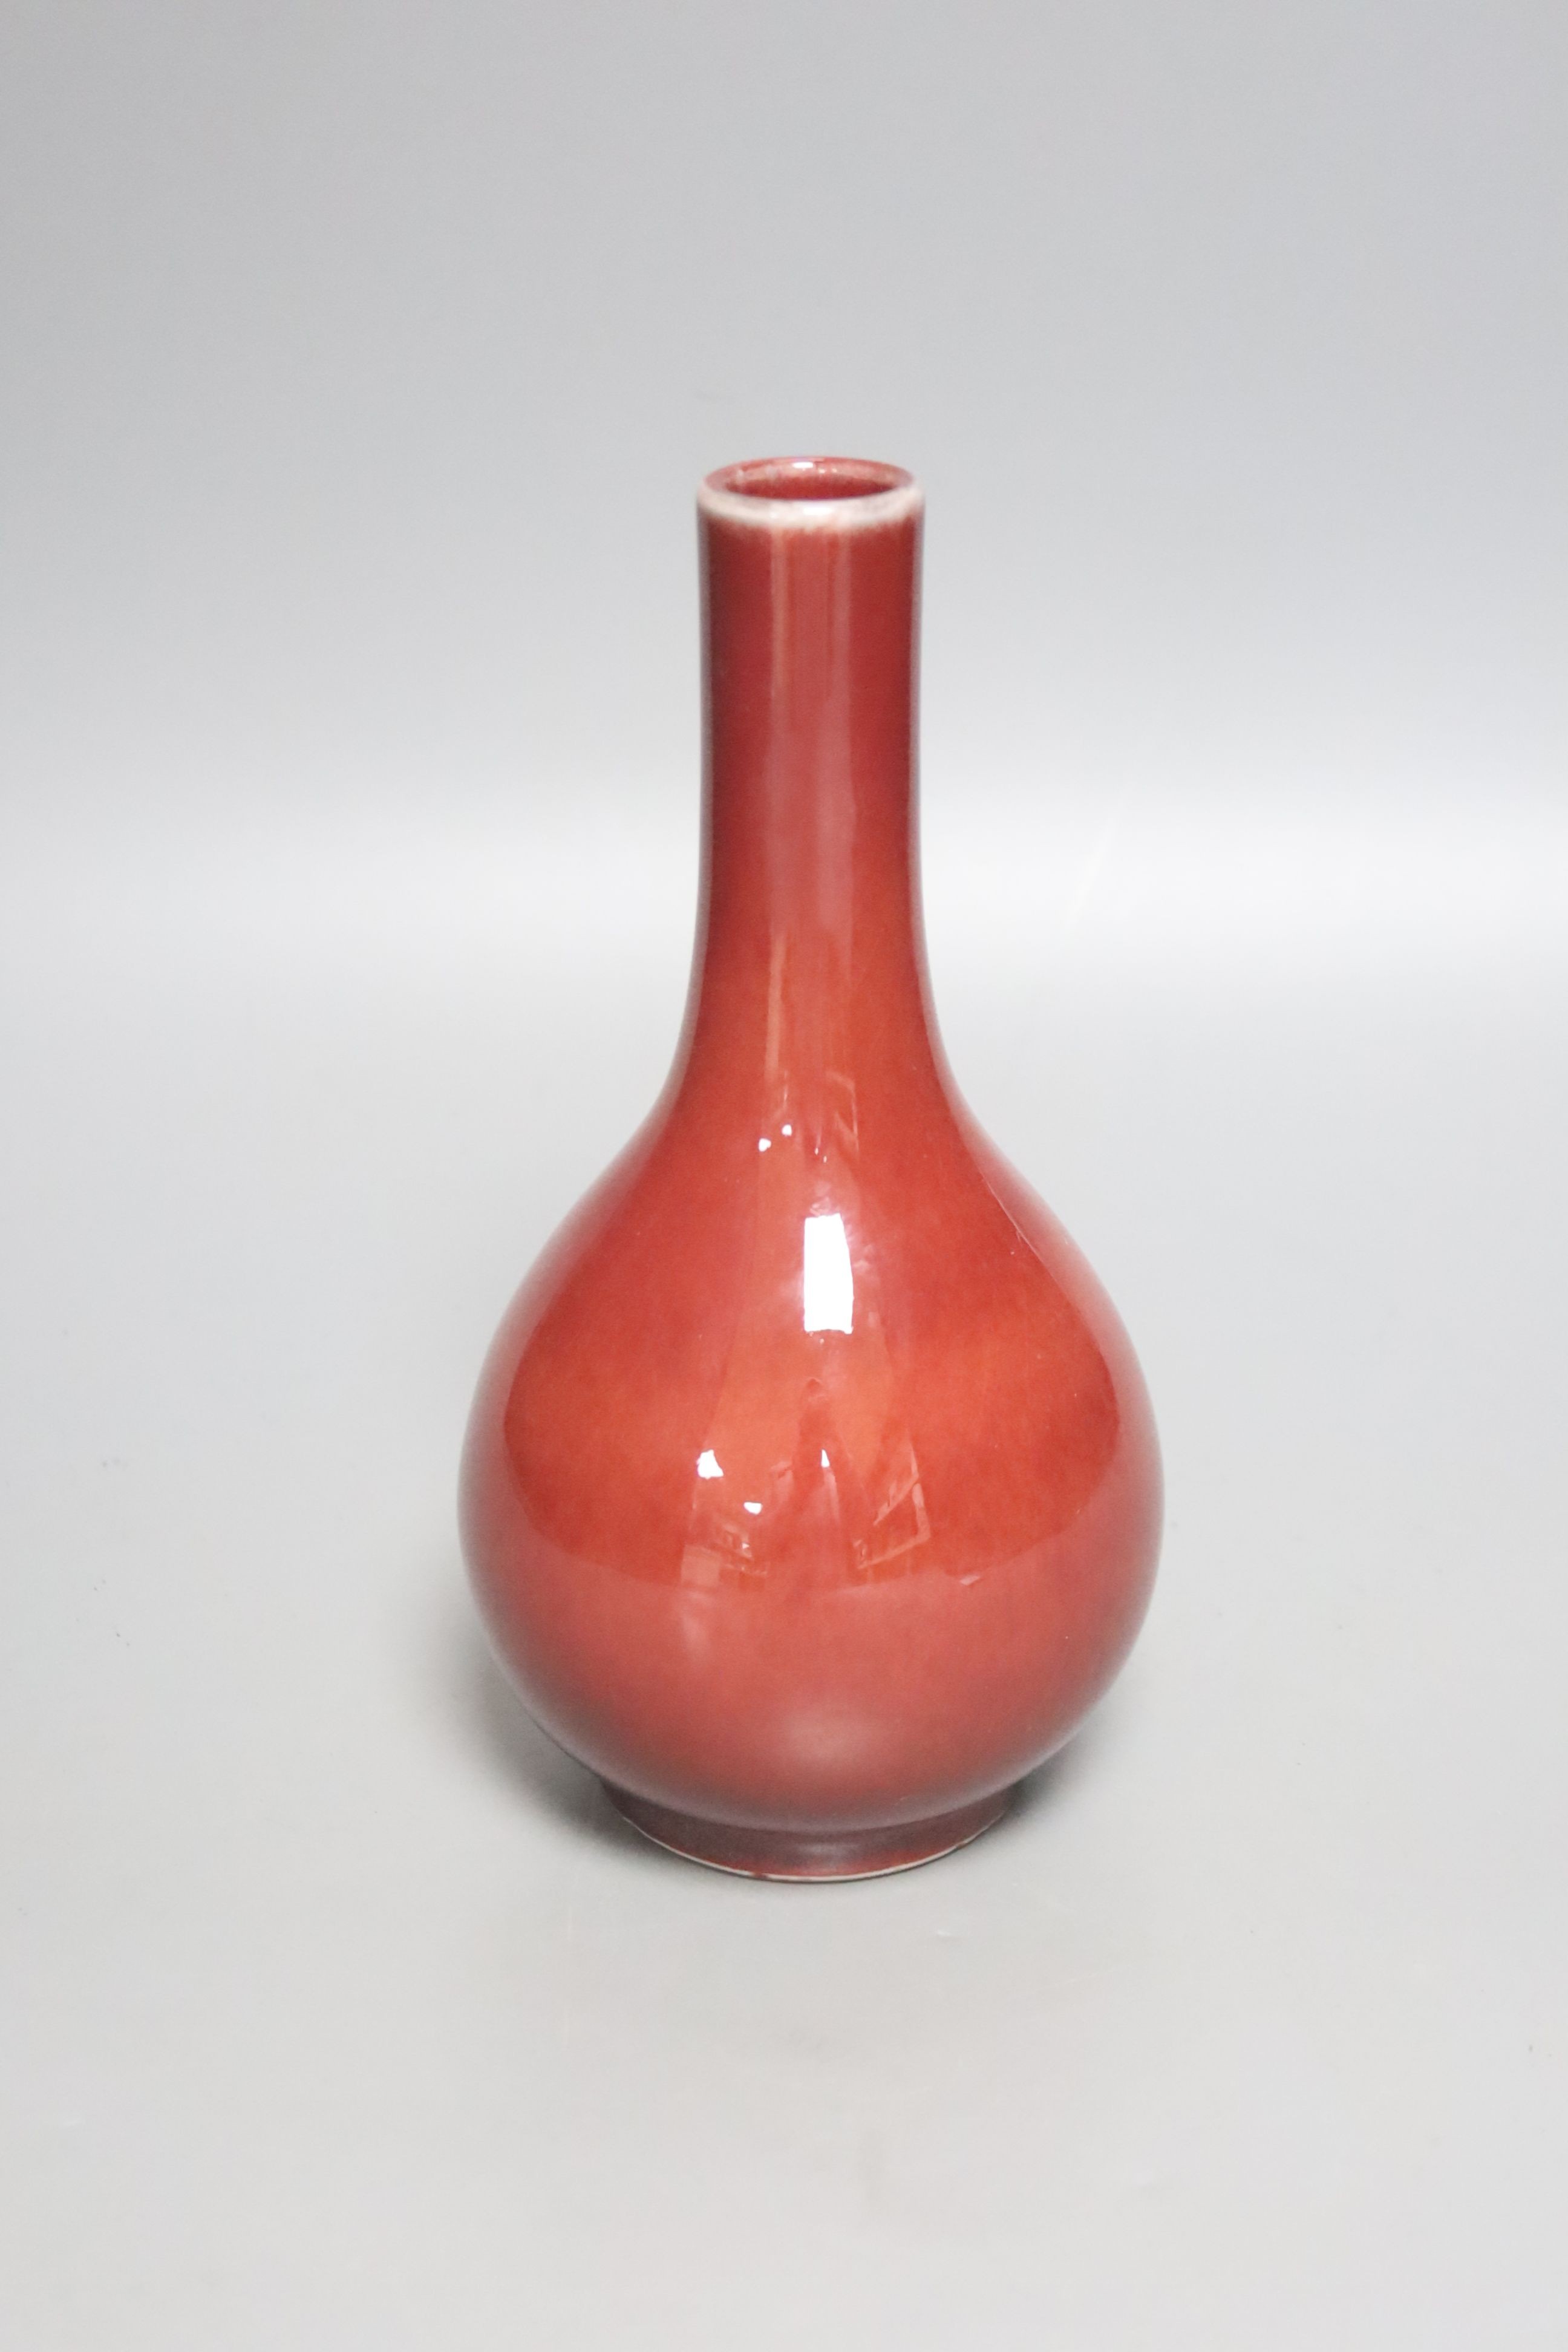 A Chinese sang de boeuf bottle vase, 19cm